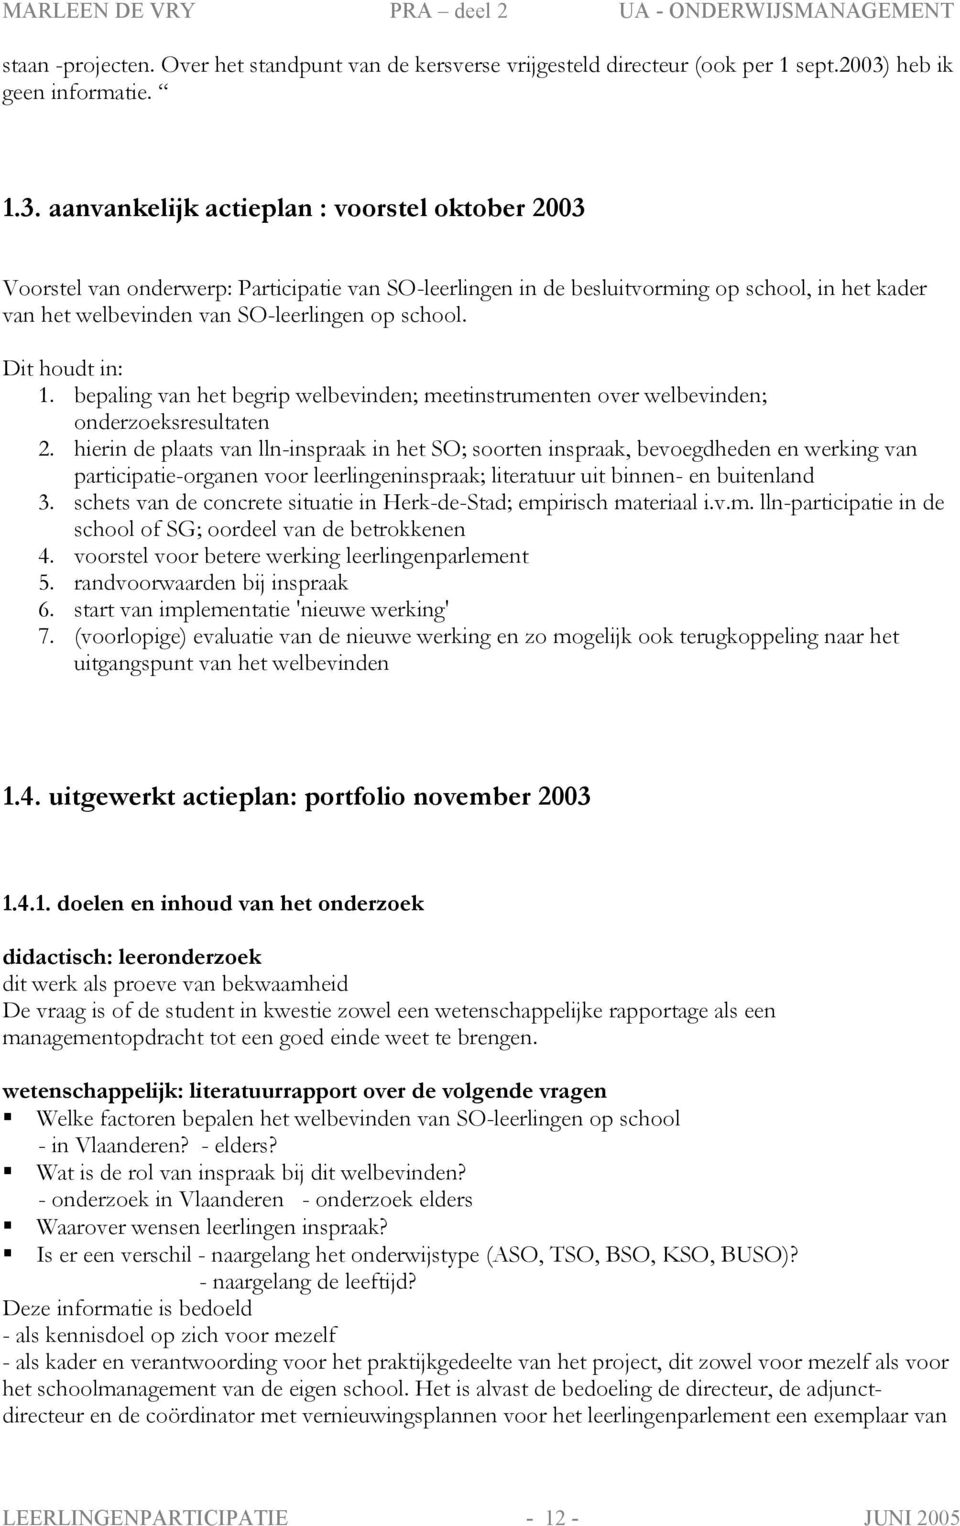 aanvankelijk actieplan : voorstel oktober 2003 Voorstel van onderwerp: Participatie van SO-leerlingen in de besluitvorming op school, in het kader van het welbevinden van SO-leerlingen op school.